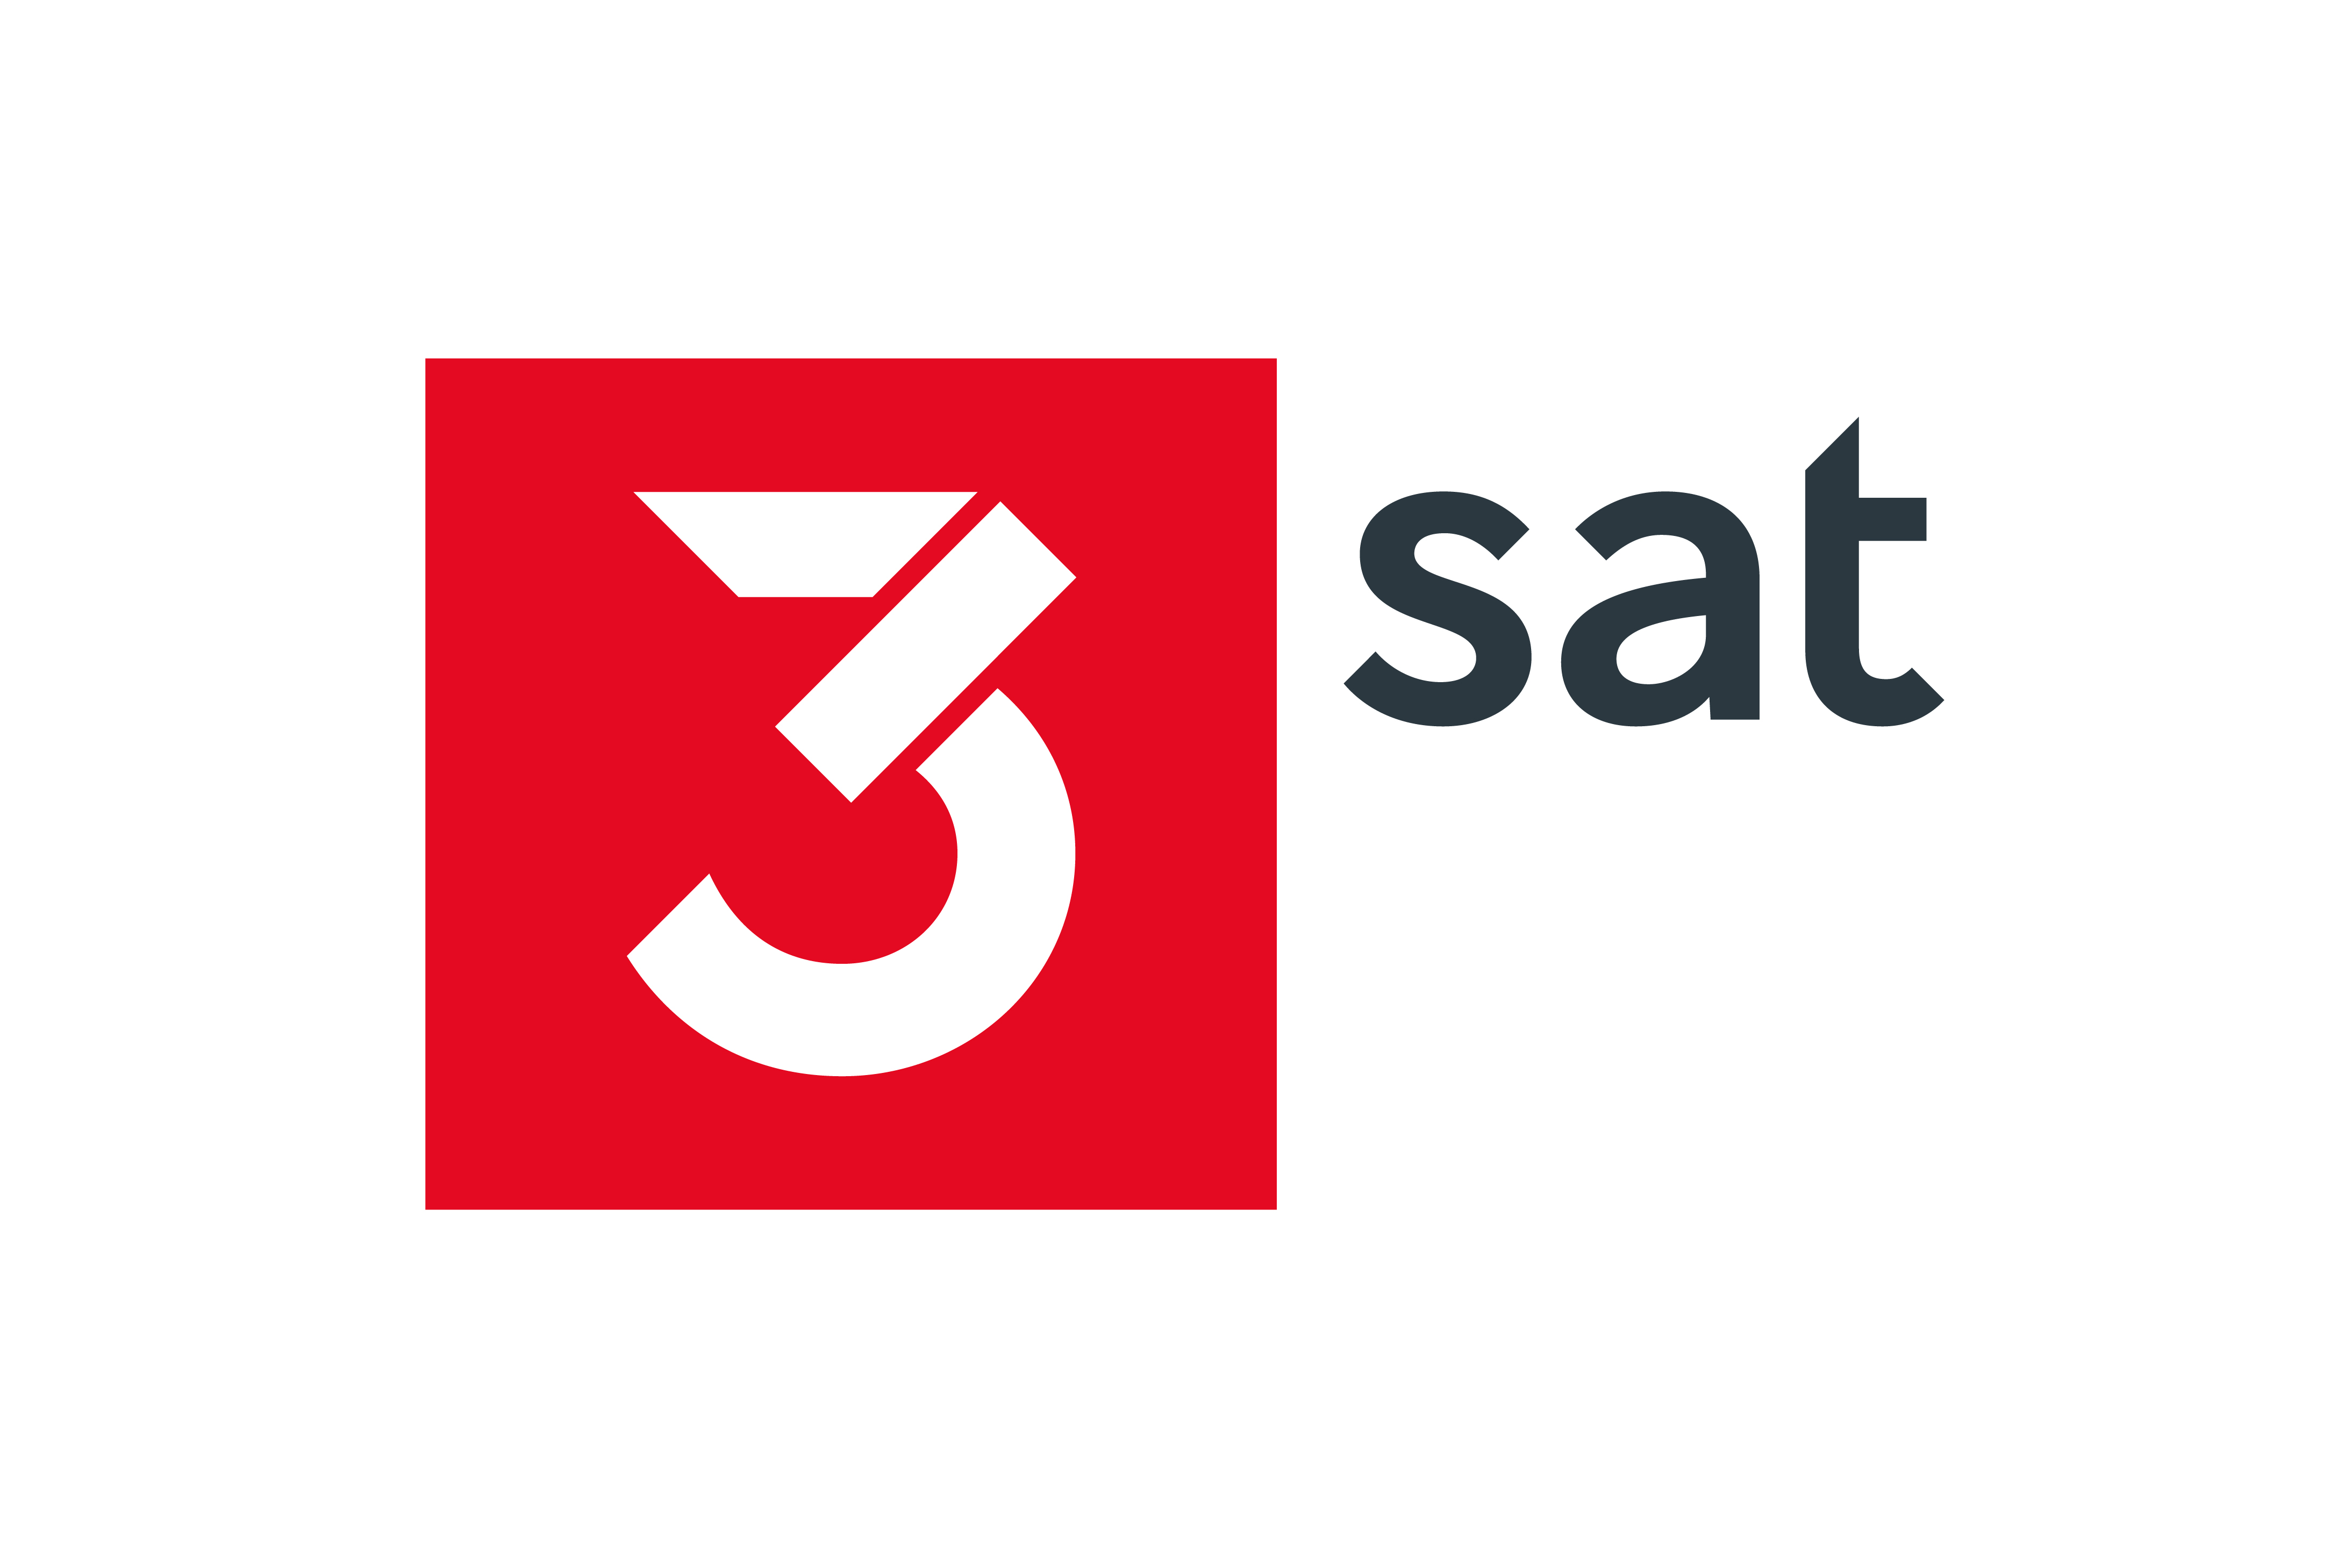 3sat Mit Neuem Design Inspiriert Und Informiert In Die Zukunft Presseportal